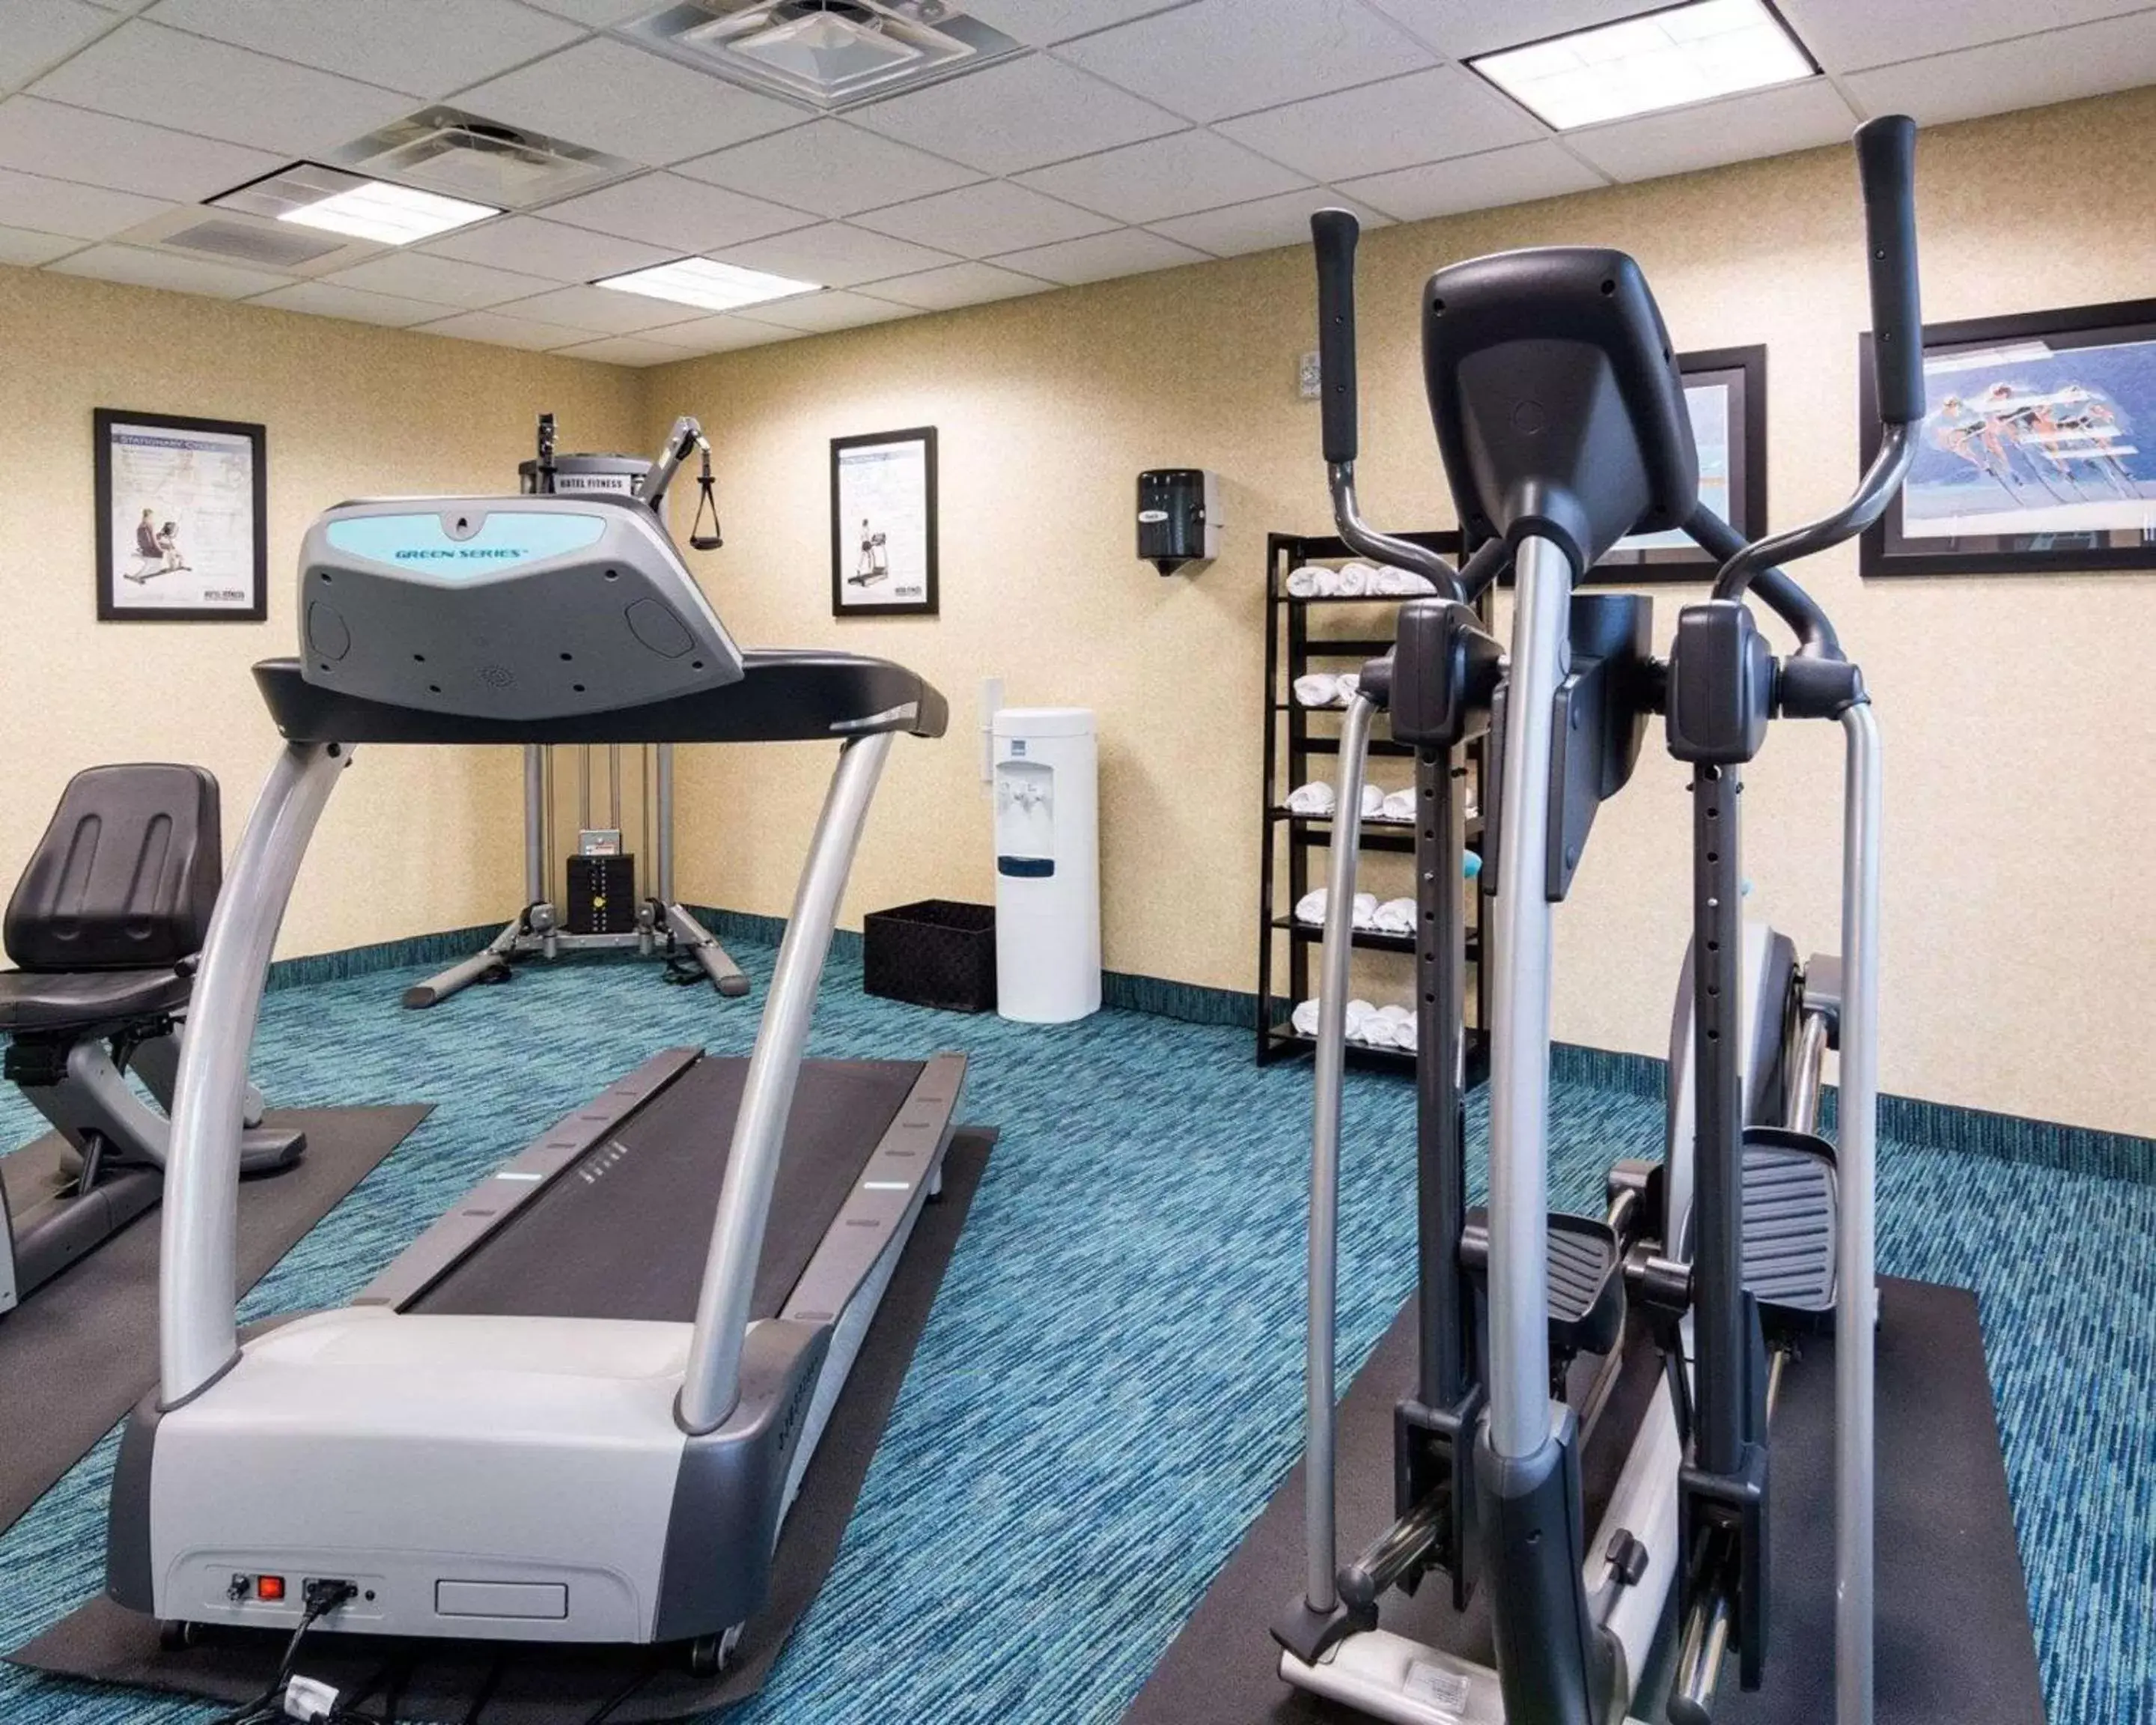 Fitness centre/facilities, Fitness Center/Facilities in Suburban Studios Quantico